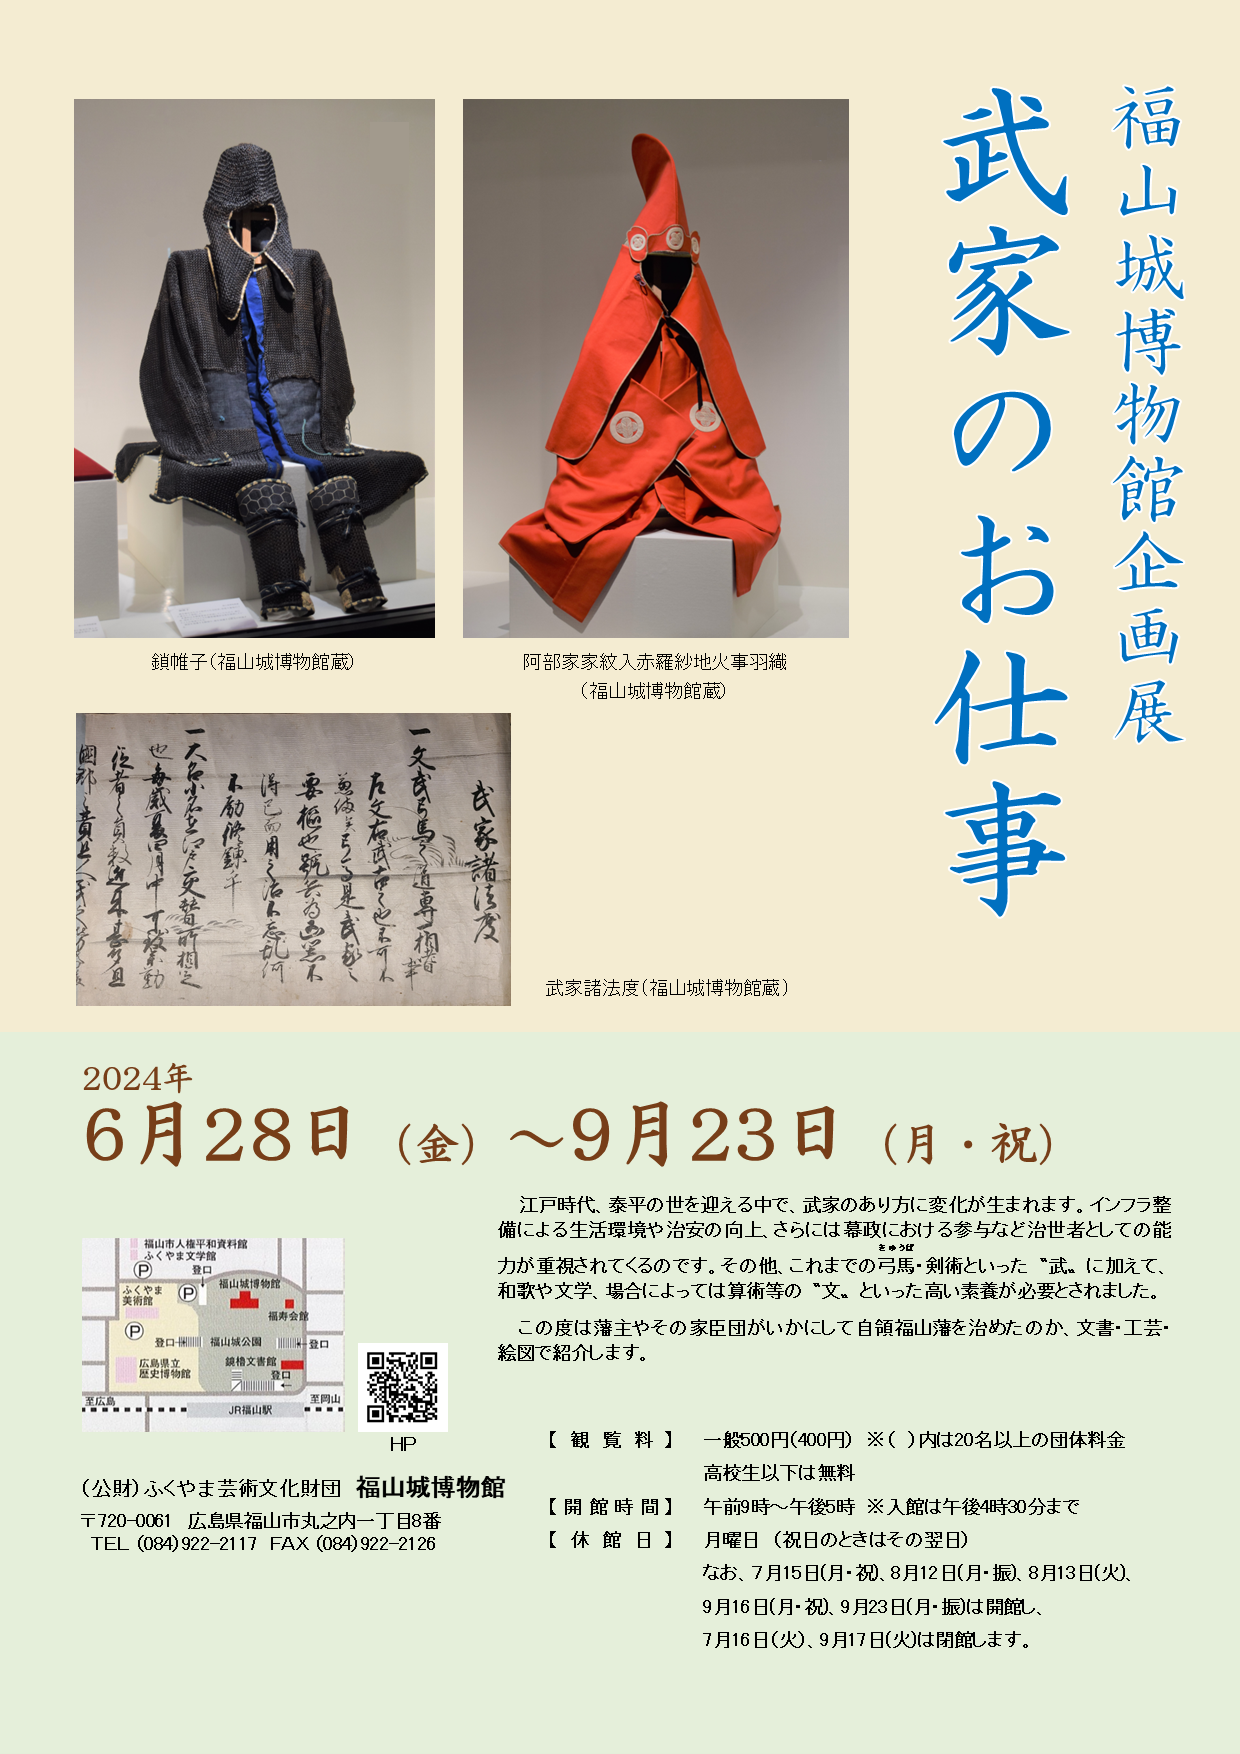 福山城博物館企画展「武家のお仕事」開催のお知らせ